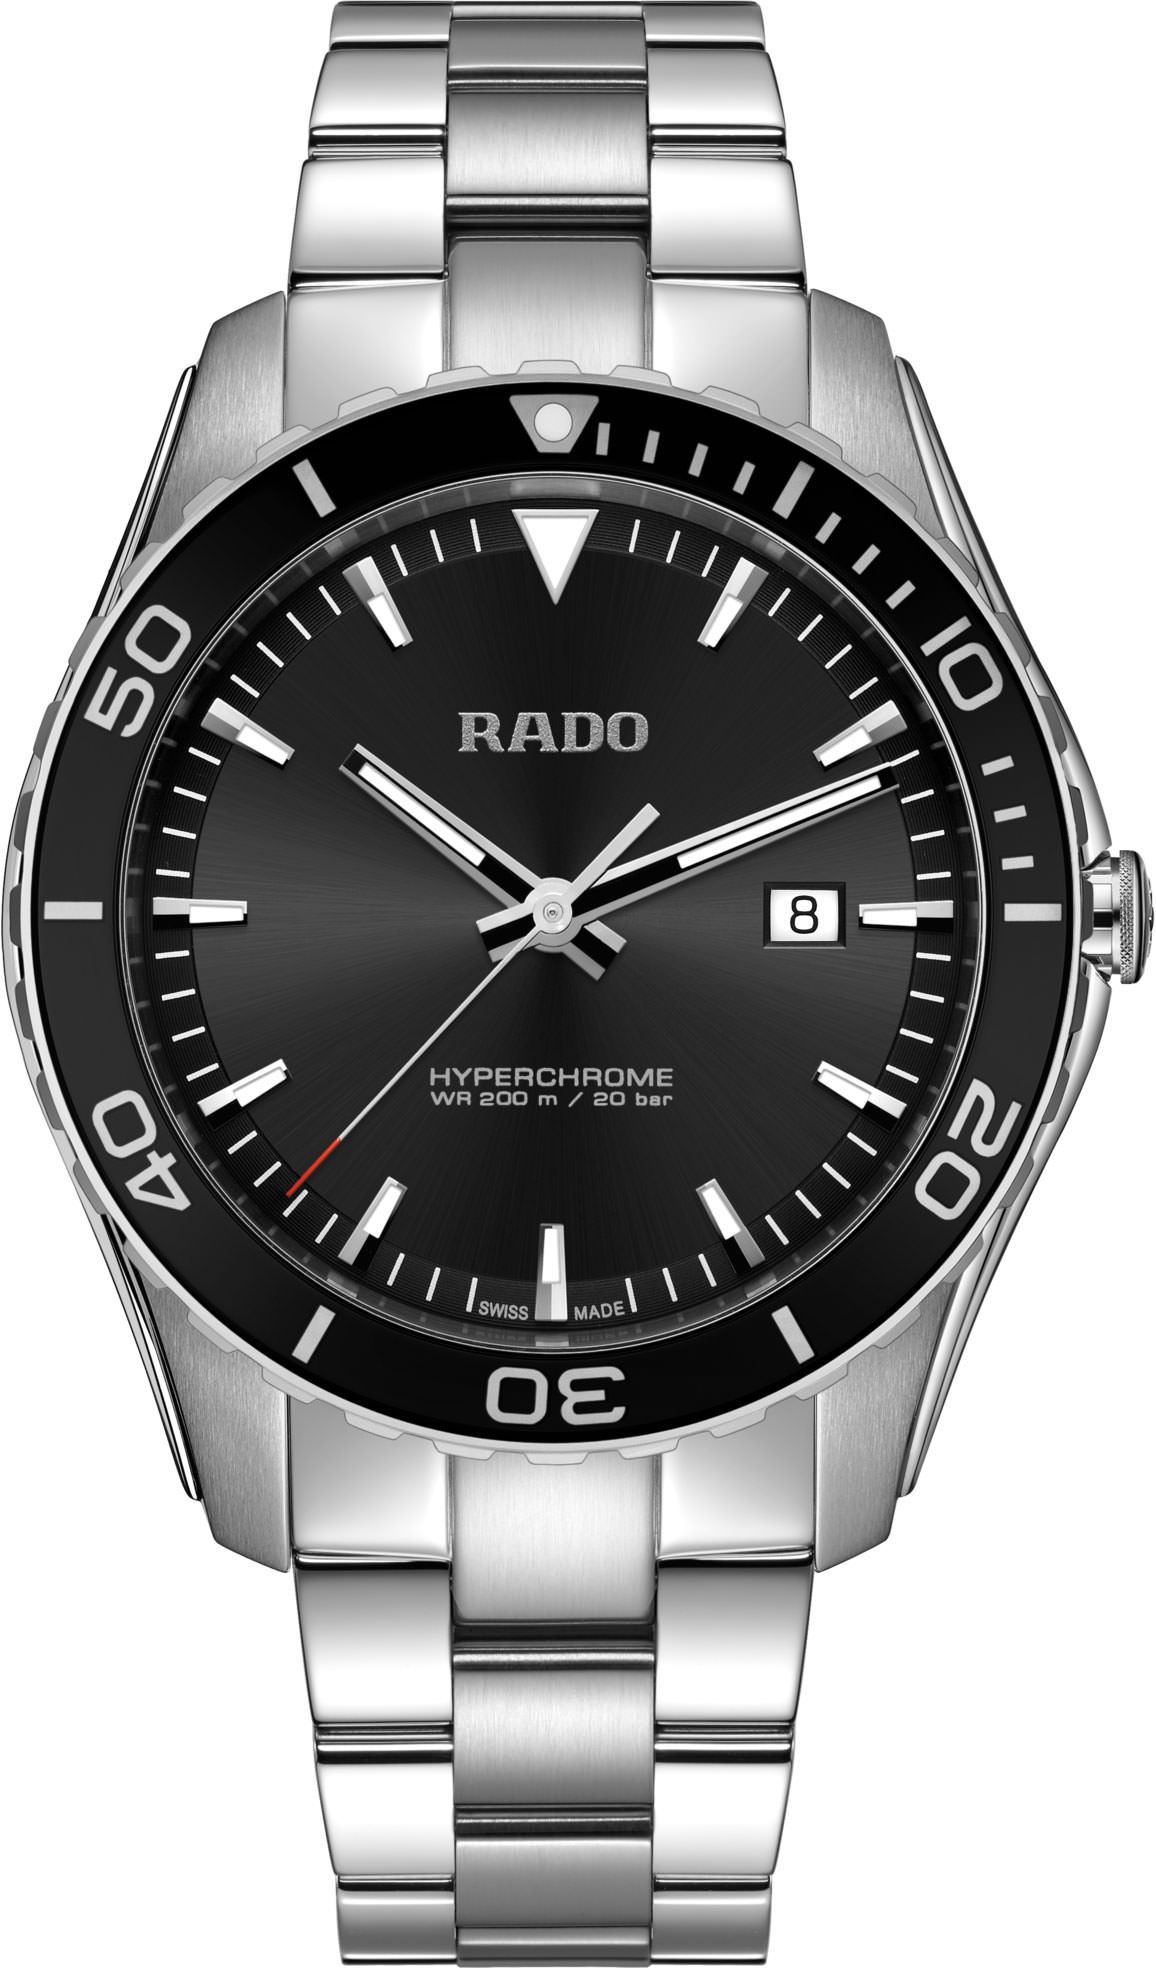 Rado HyperChrome  Black Dial 44 mm Quartz Watch For Men - 1